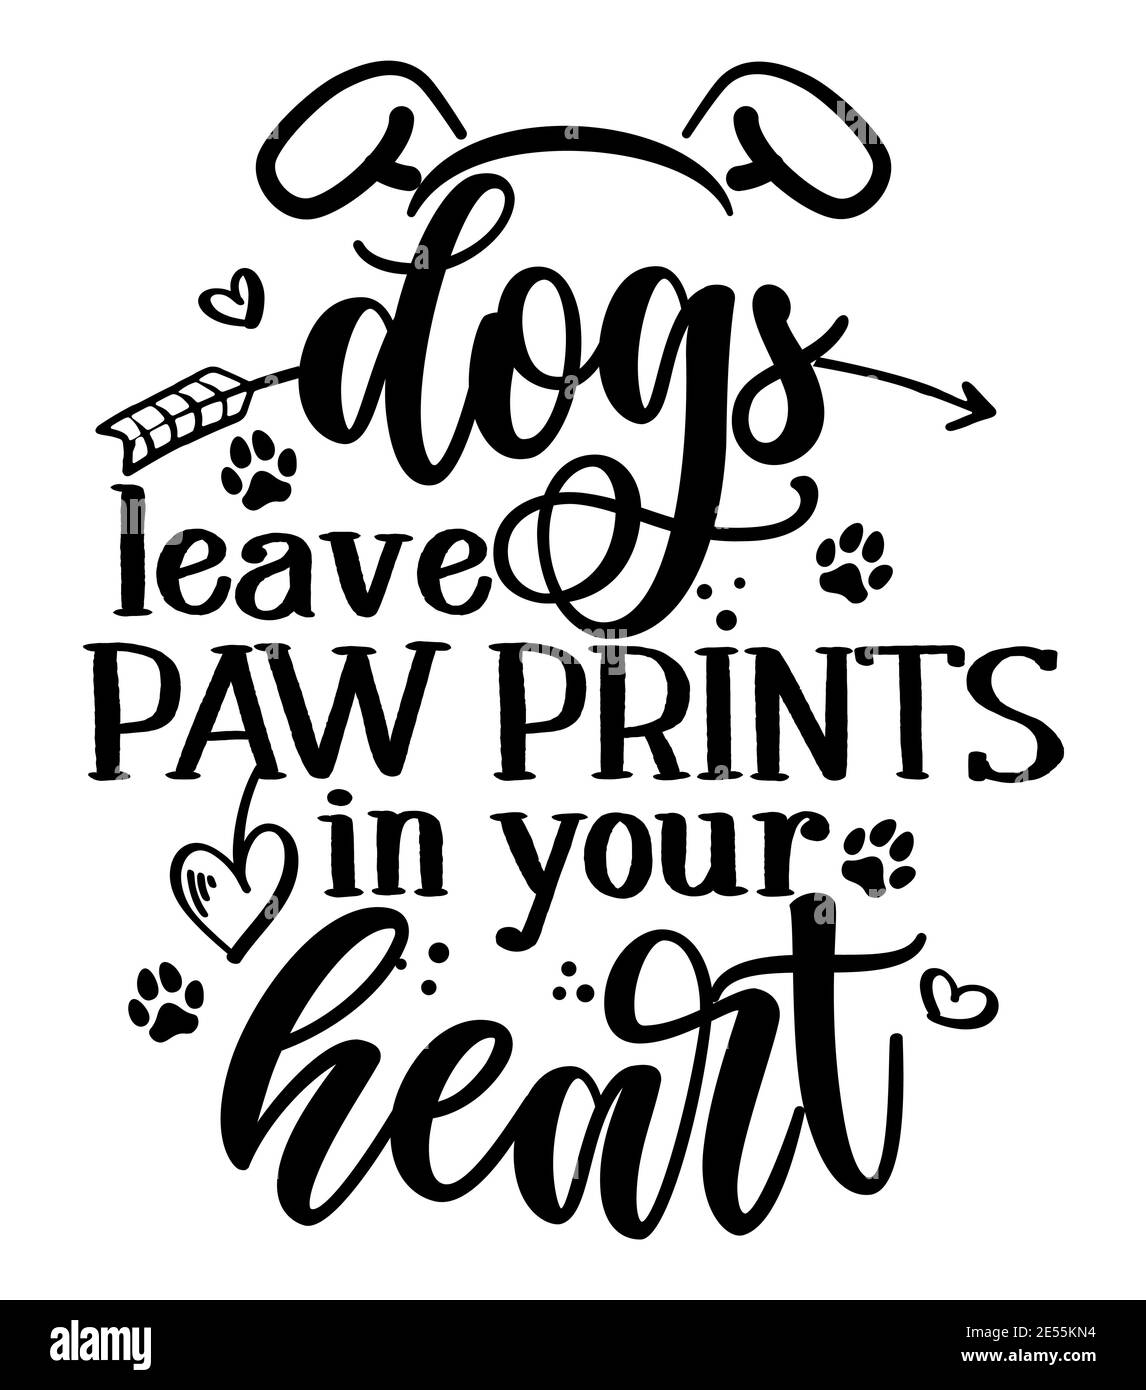 Hunde hinterlassen Pfotenabdrücke in Ihrem Herzen - entzückende Kalligrafie Phrase für Valentinstag. Handgezeichnete Schriftzüge für schöne Grußkarten, Einladungen. Gut Stock Vektor